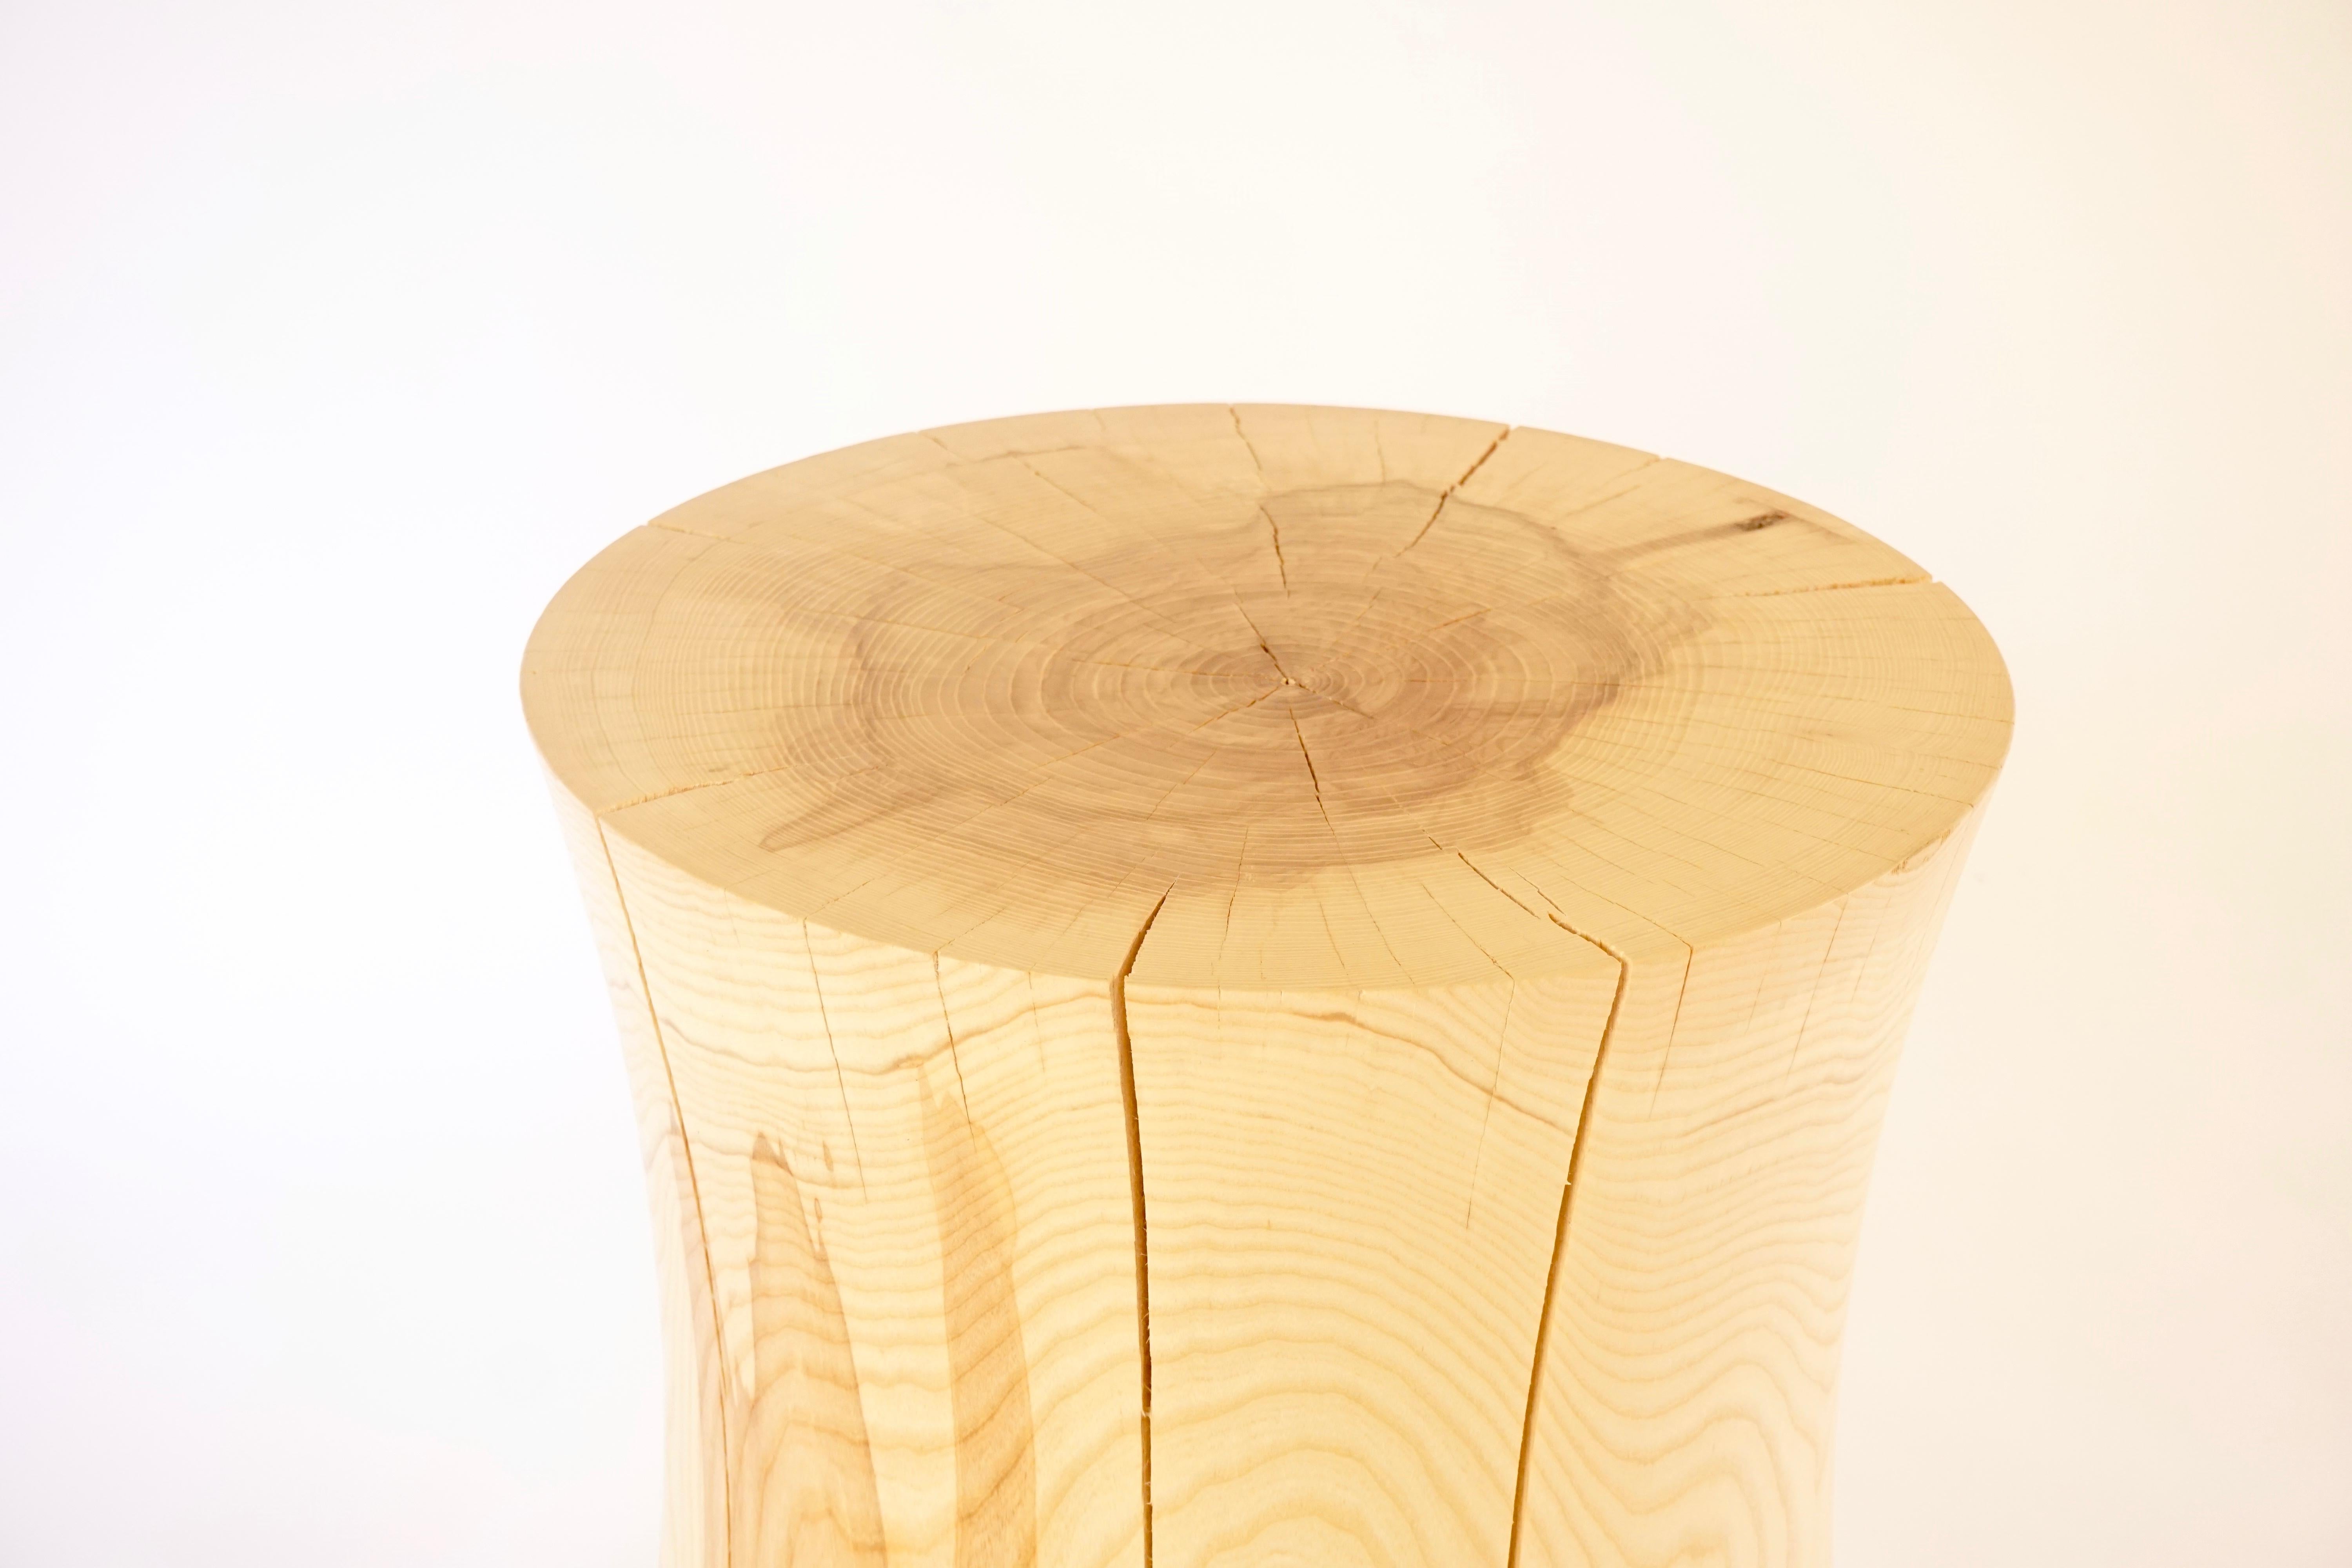 Ce guéridon #2 en frêne est l'une des dix formes originales de la collection de guéridons Lehrecke de 1996. Ce qui rend cette pièce spéciale, c'est la qualité du bois et le fait que le frêne disparaît à un rythme alarmant. M. Lehrecke collecte dès à